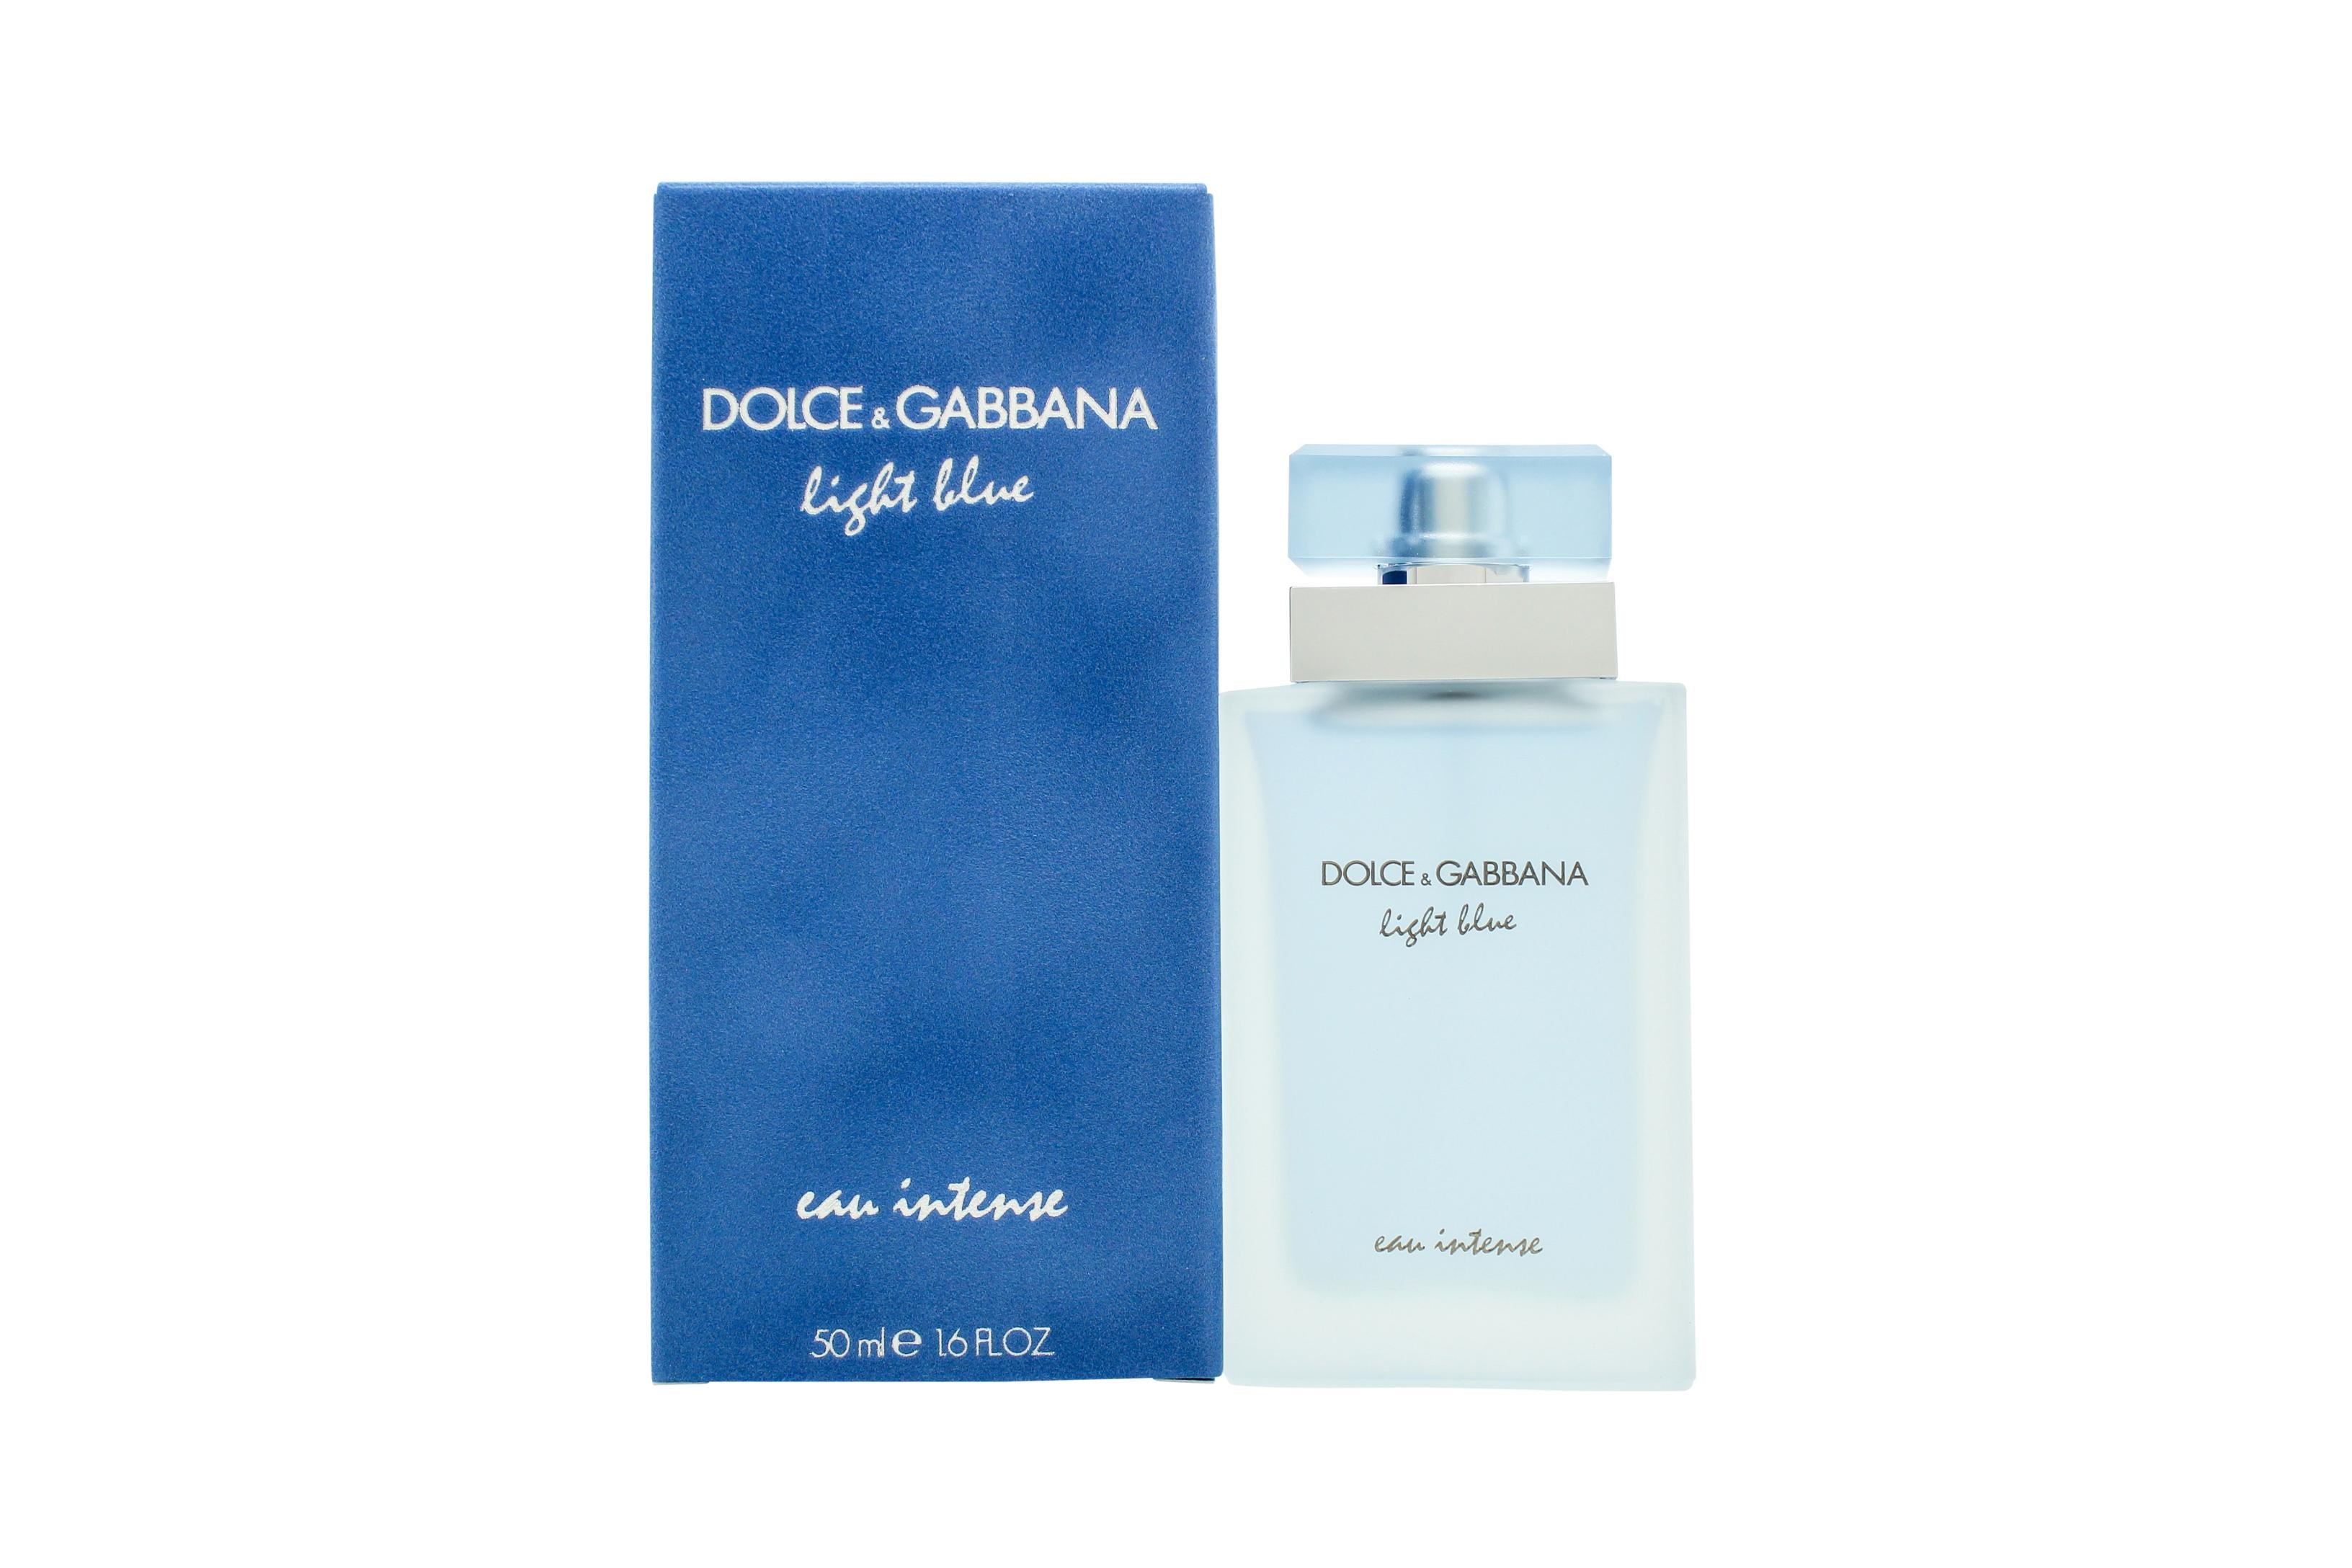 View Dolce Gabbana Light Blue Eau Intense Eau de Parfum 50ml Spray information